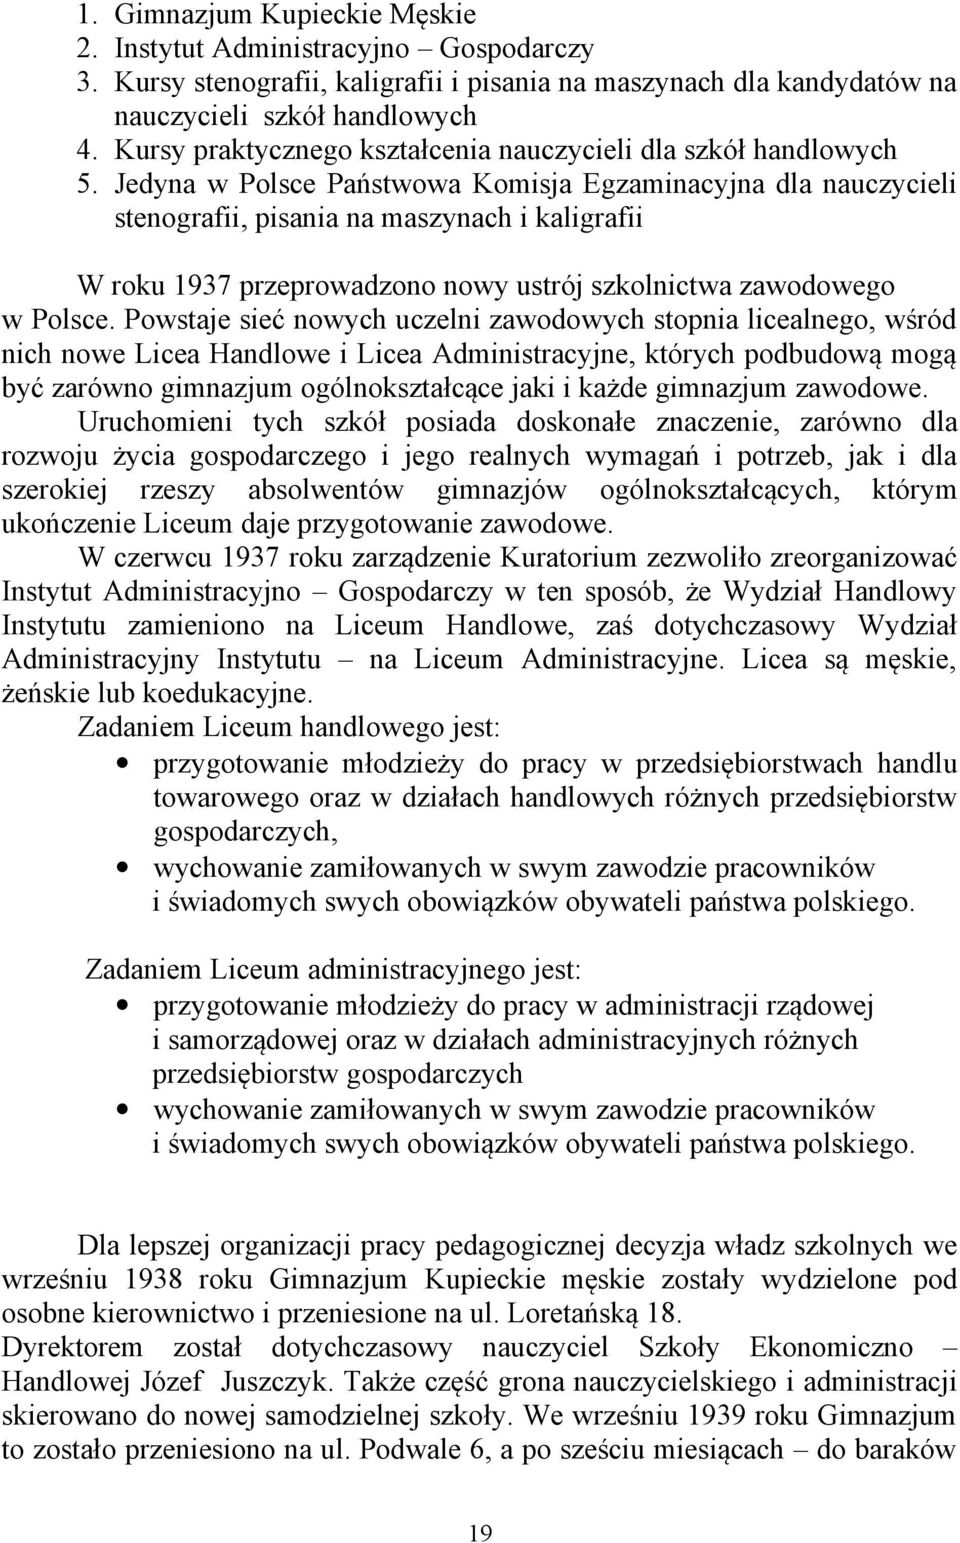 Jedyna w Polsce Państwowa Komisja Egzaminacyjna dla nauczycieli stenografii, pisania na maszynach i kaligrafii W roku 1937 przeprowadzono nowy ustrój szkolnictwa zawodowego w Polsce.